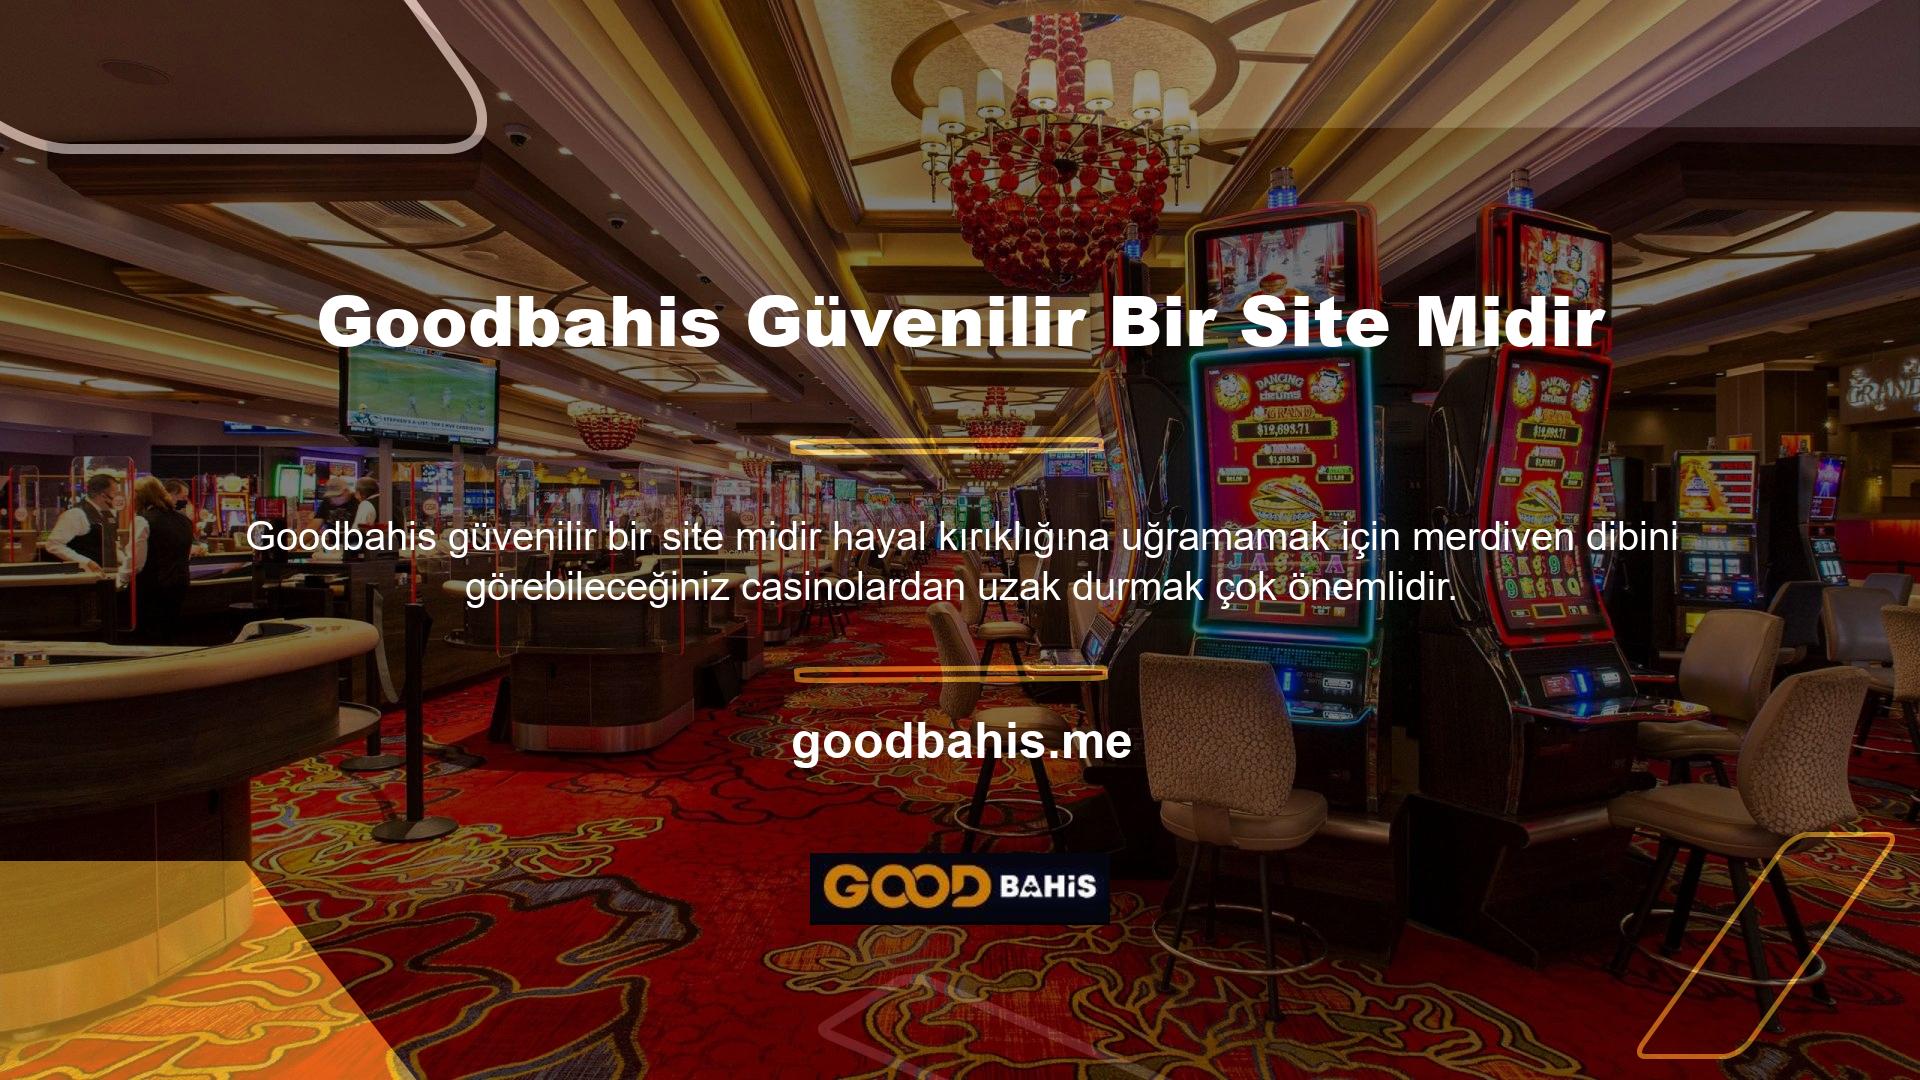 Goodbahis, Türk casino ve online casino pazarının en tanınmış ve güvenilir isimlerinden biridir ve her adımda kullanıcıları için başarıyla fark yaratmaktadır